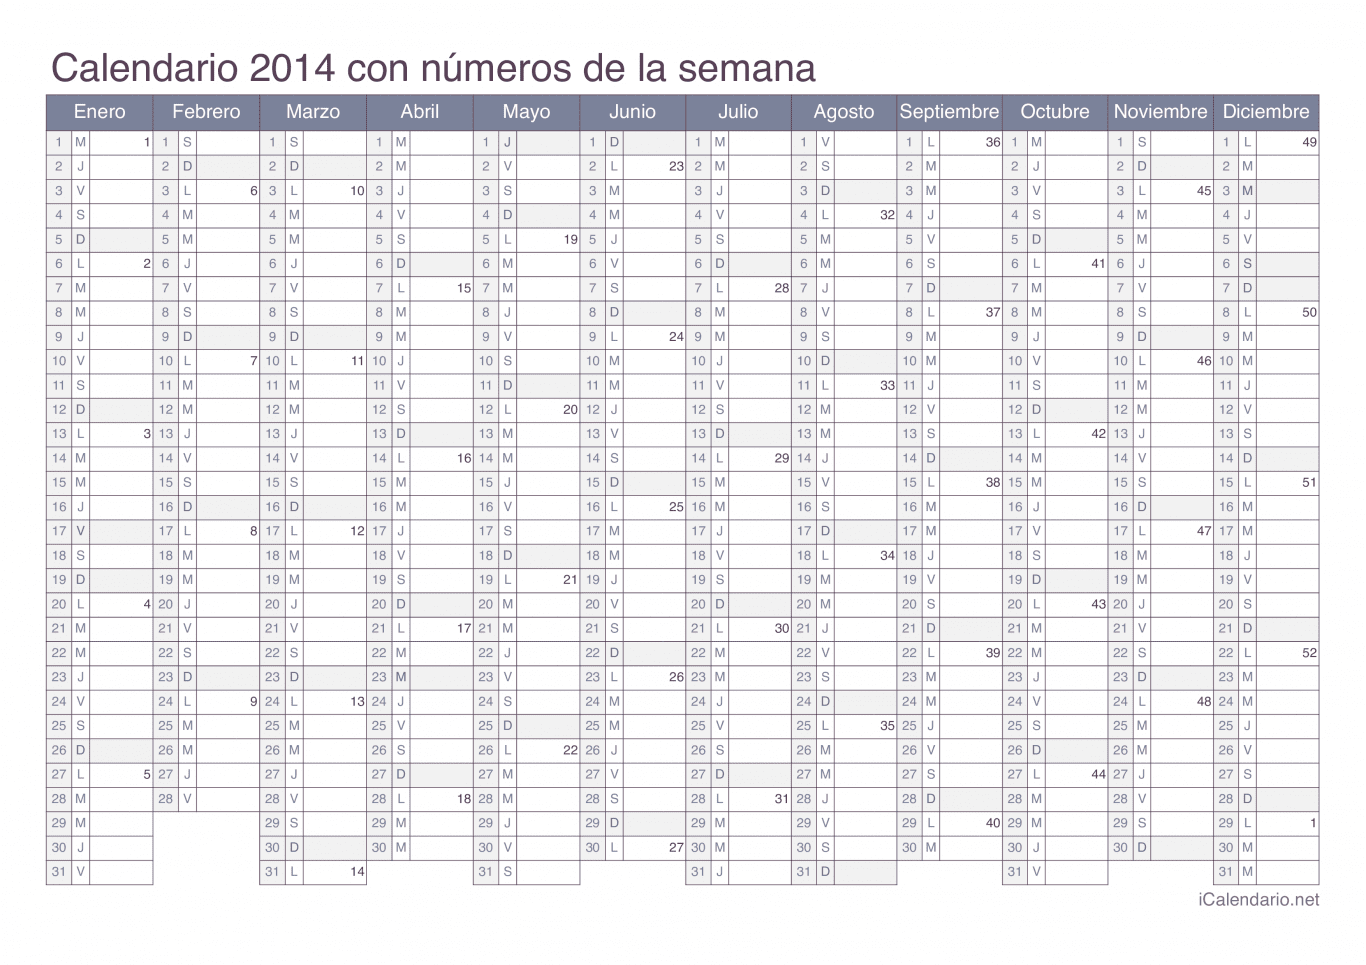 Calendario 2014 con números de semana - Office